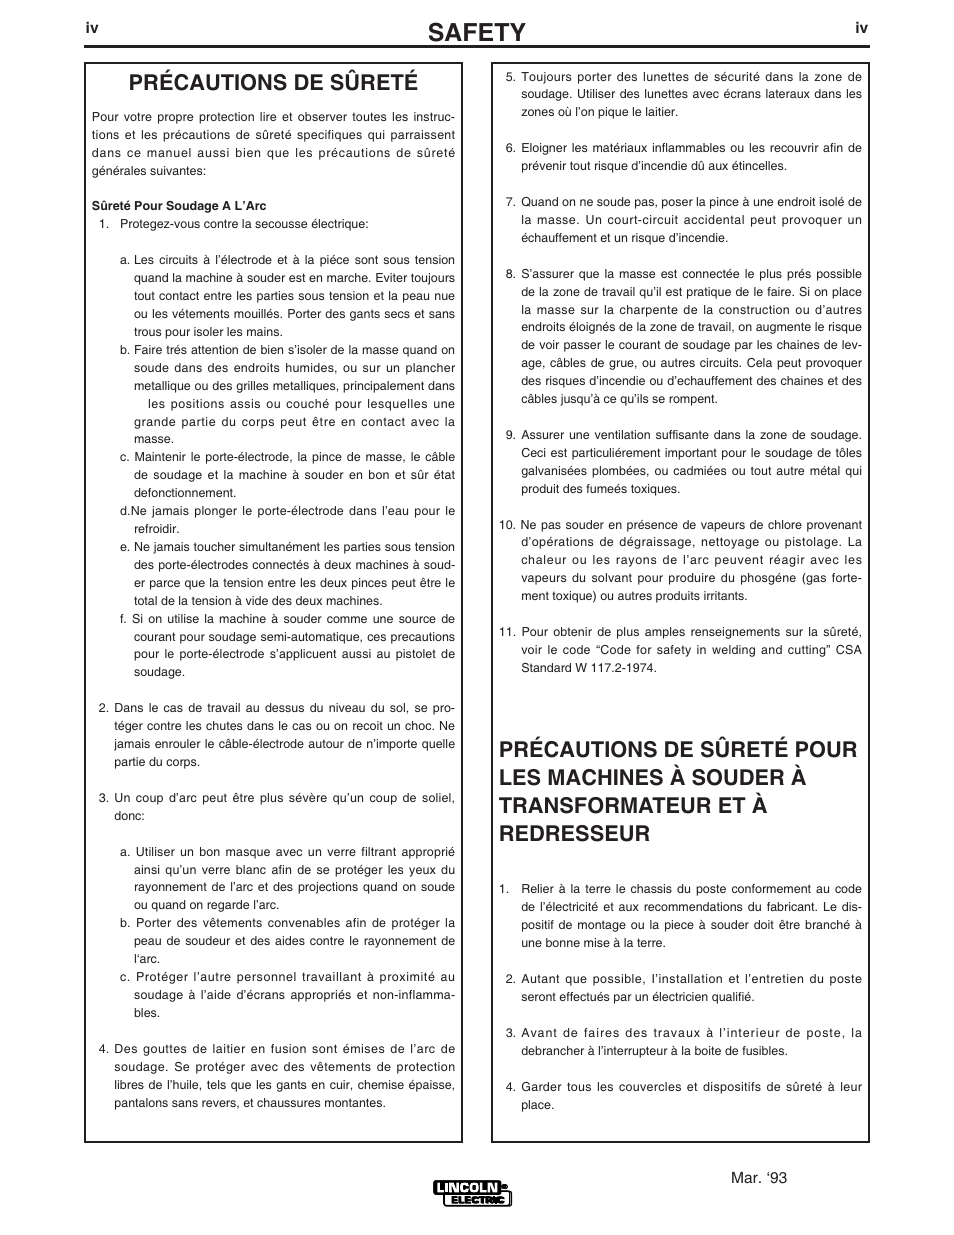 Safety, Précautions de sûreté | Lincoln Electric WELD-PAK 3200HD User Manual | Page 5 / 48